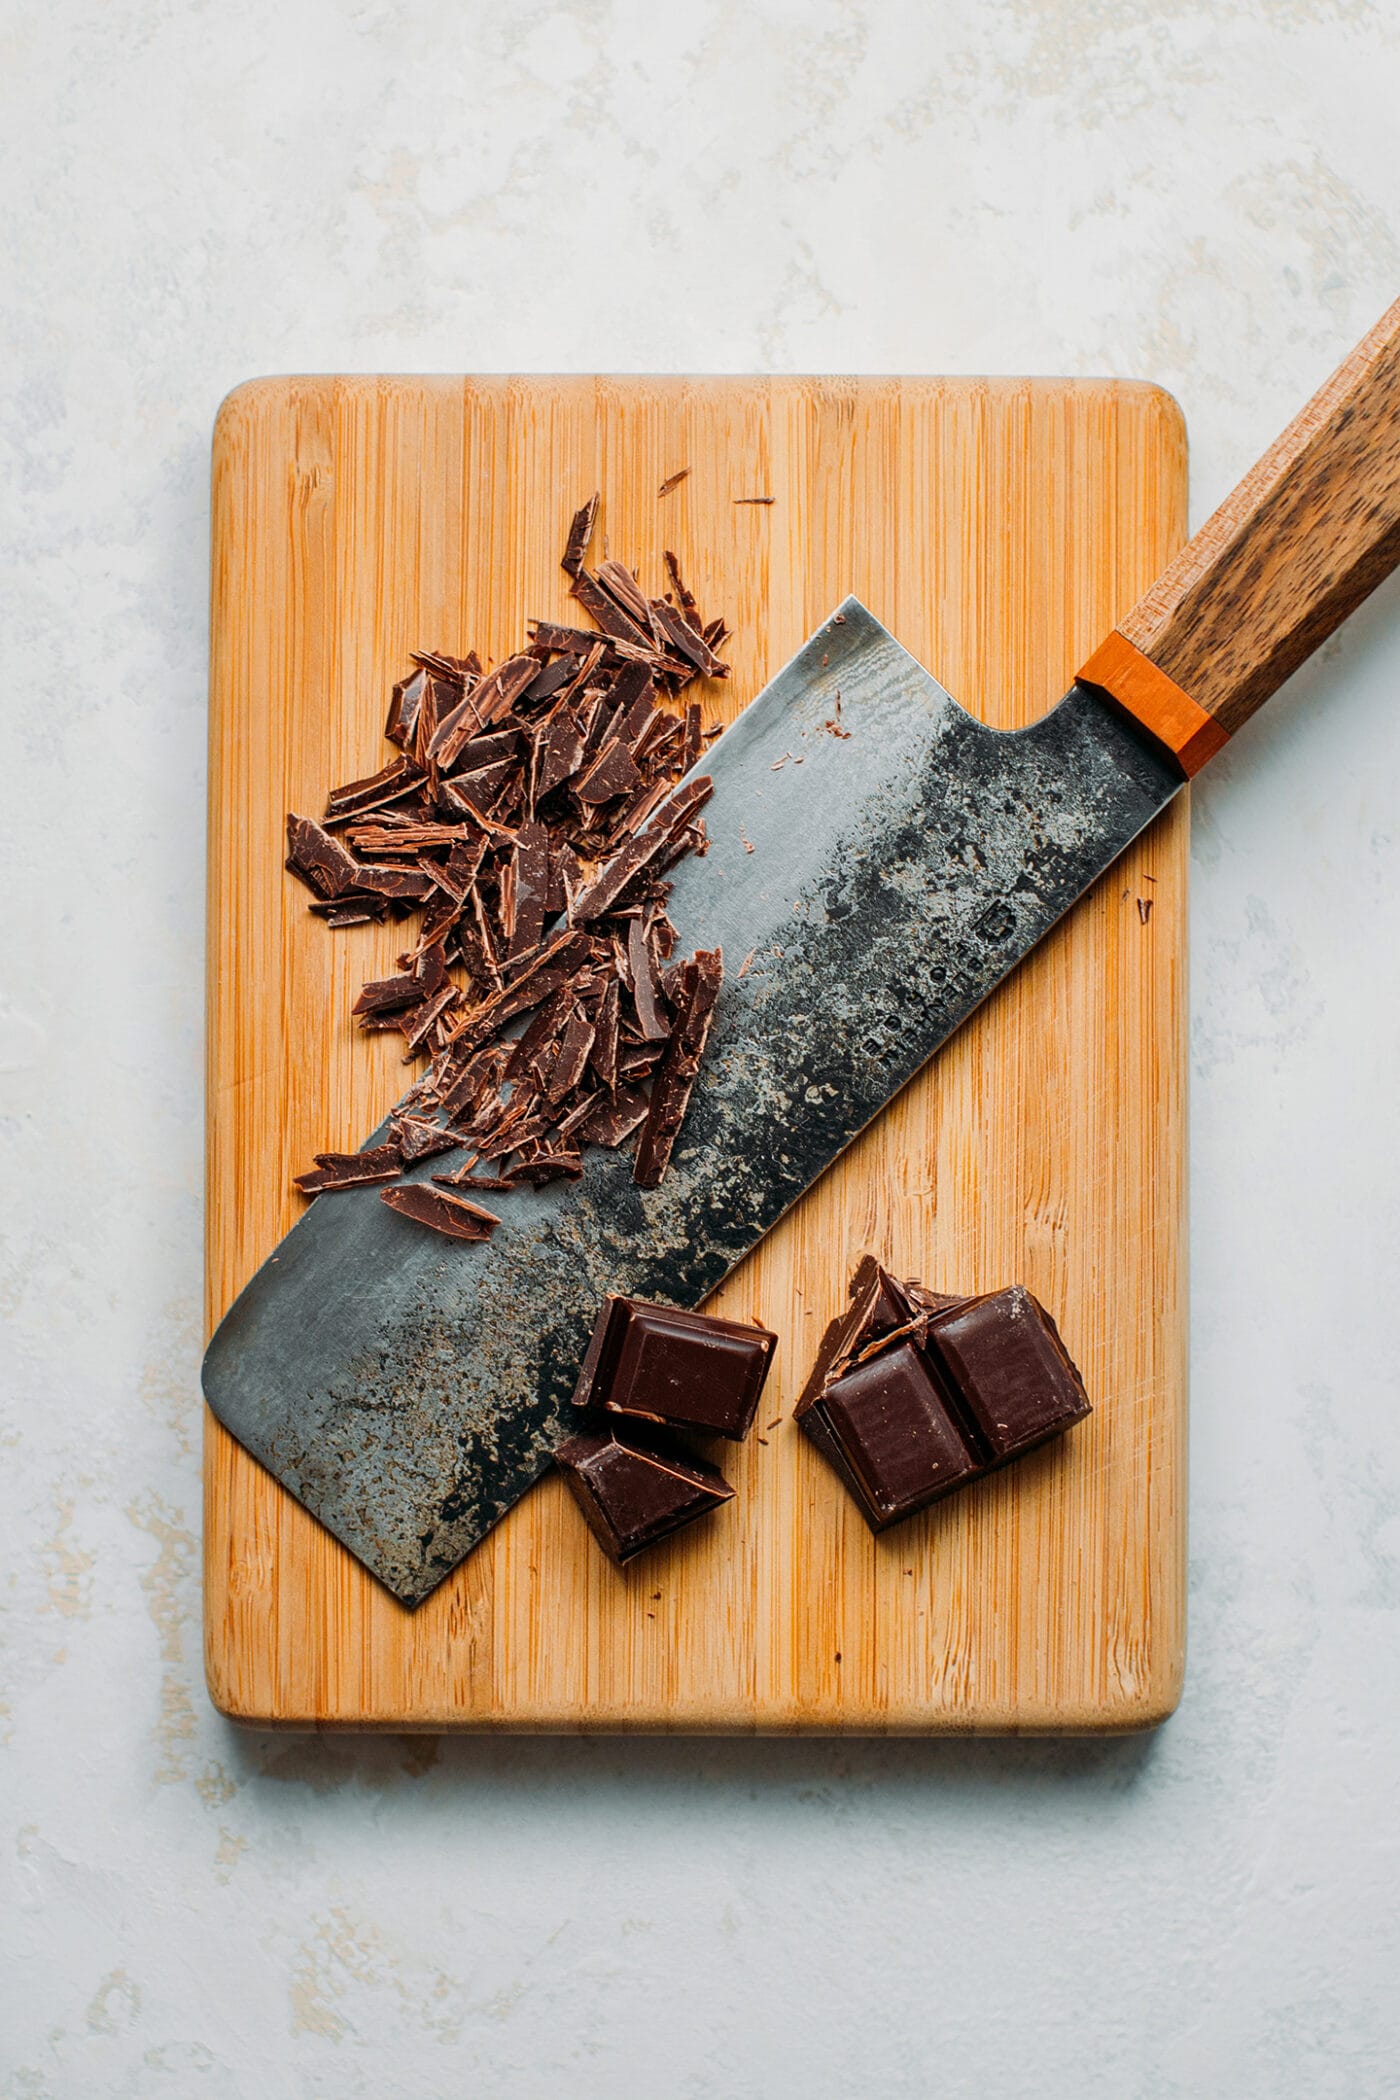 Chopped dark chocolate on a cutting board.